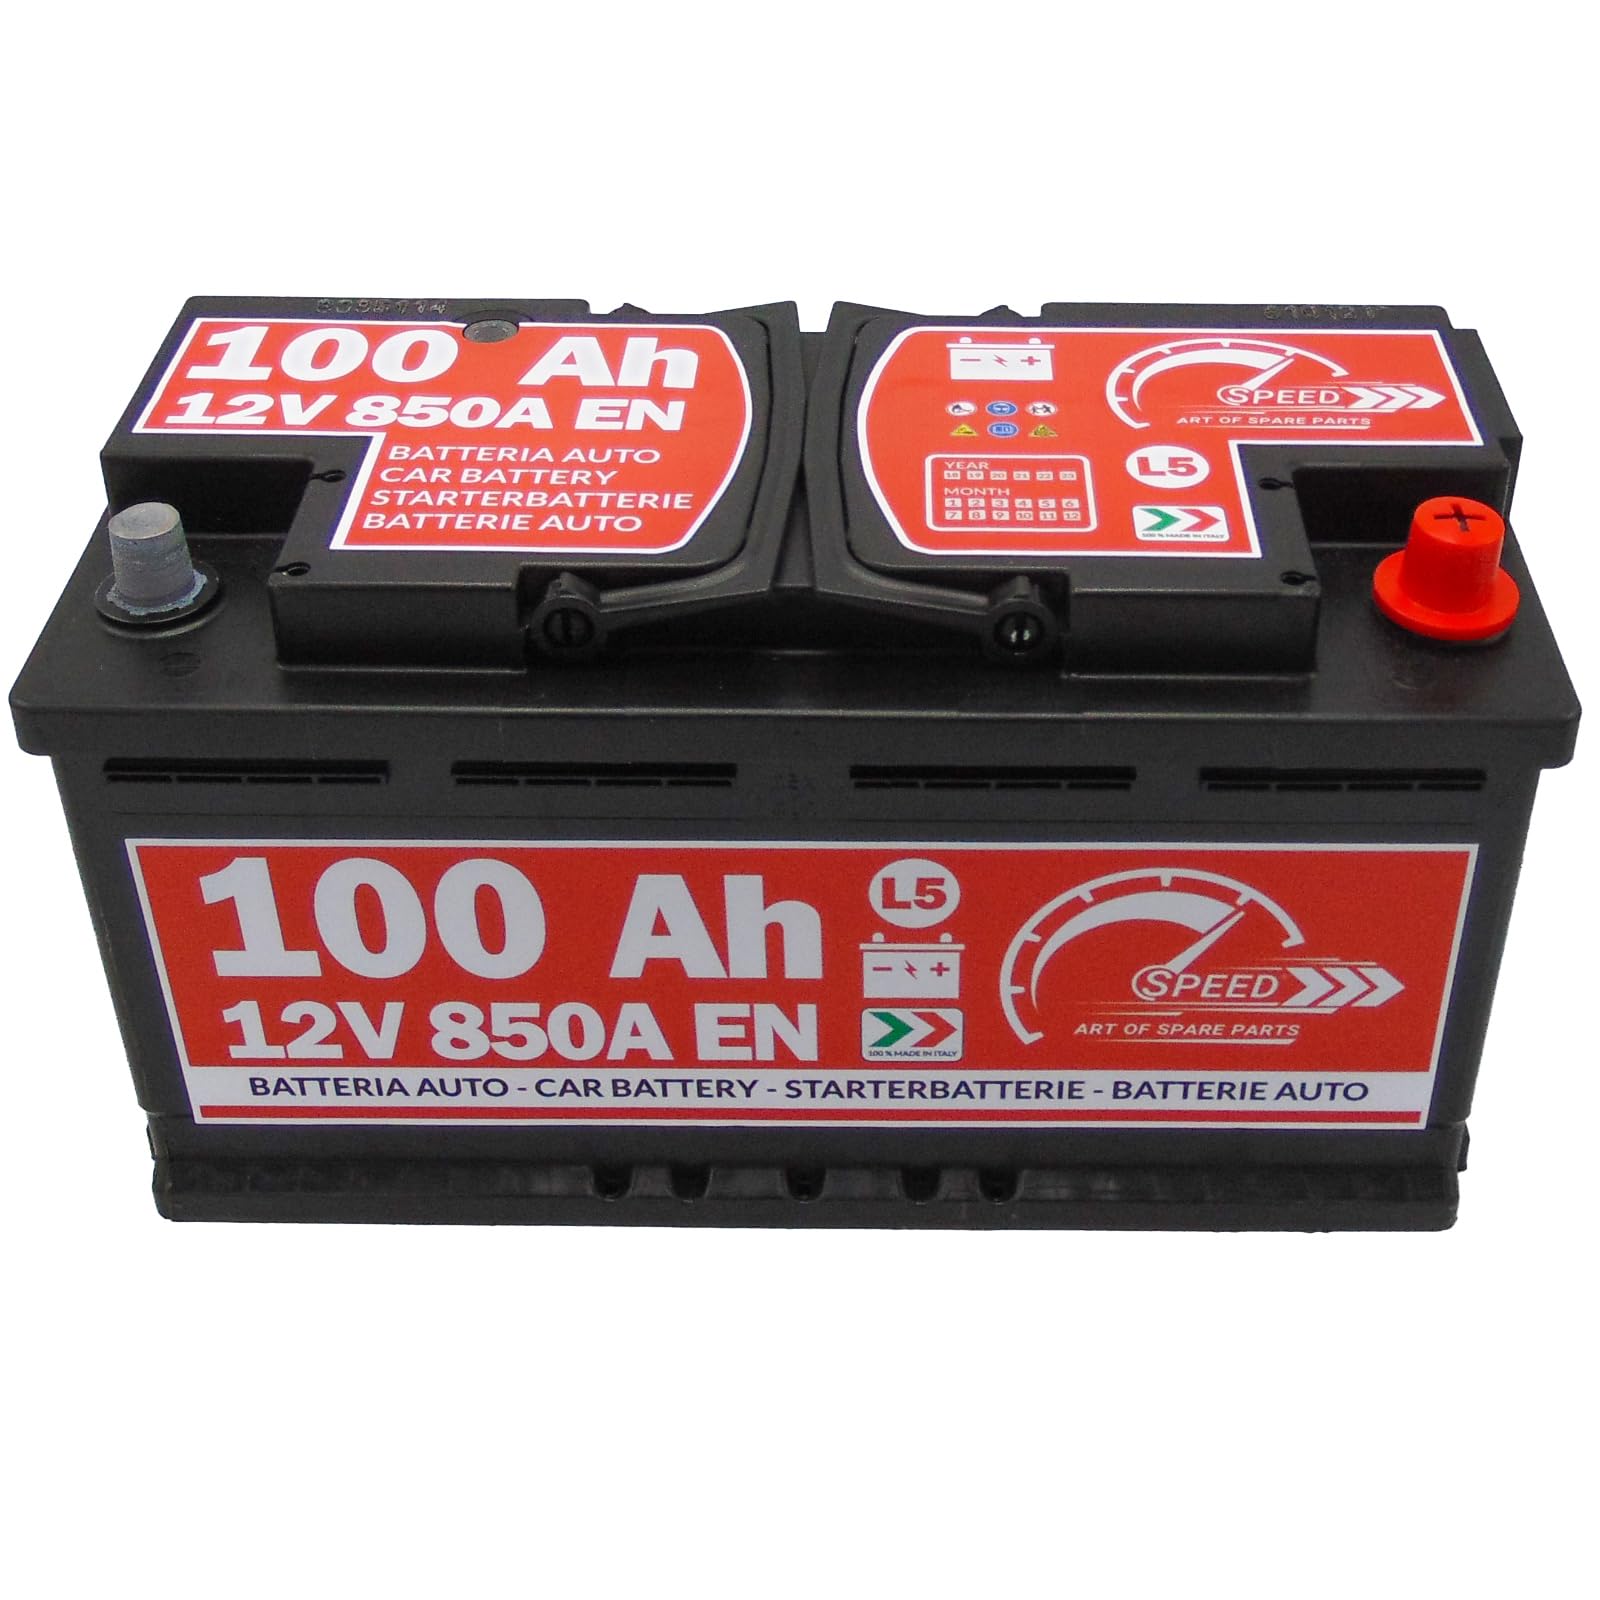 Autobatterie SMC Speed L5, 100 Ah, 12 V, 850 A, Pluspol rechts von SPEED